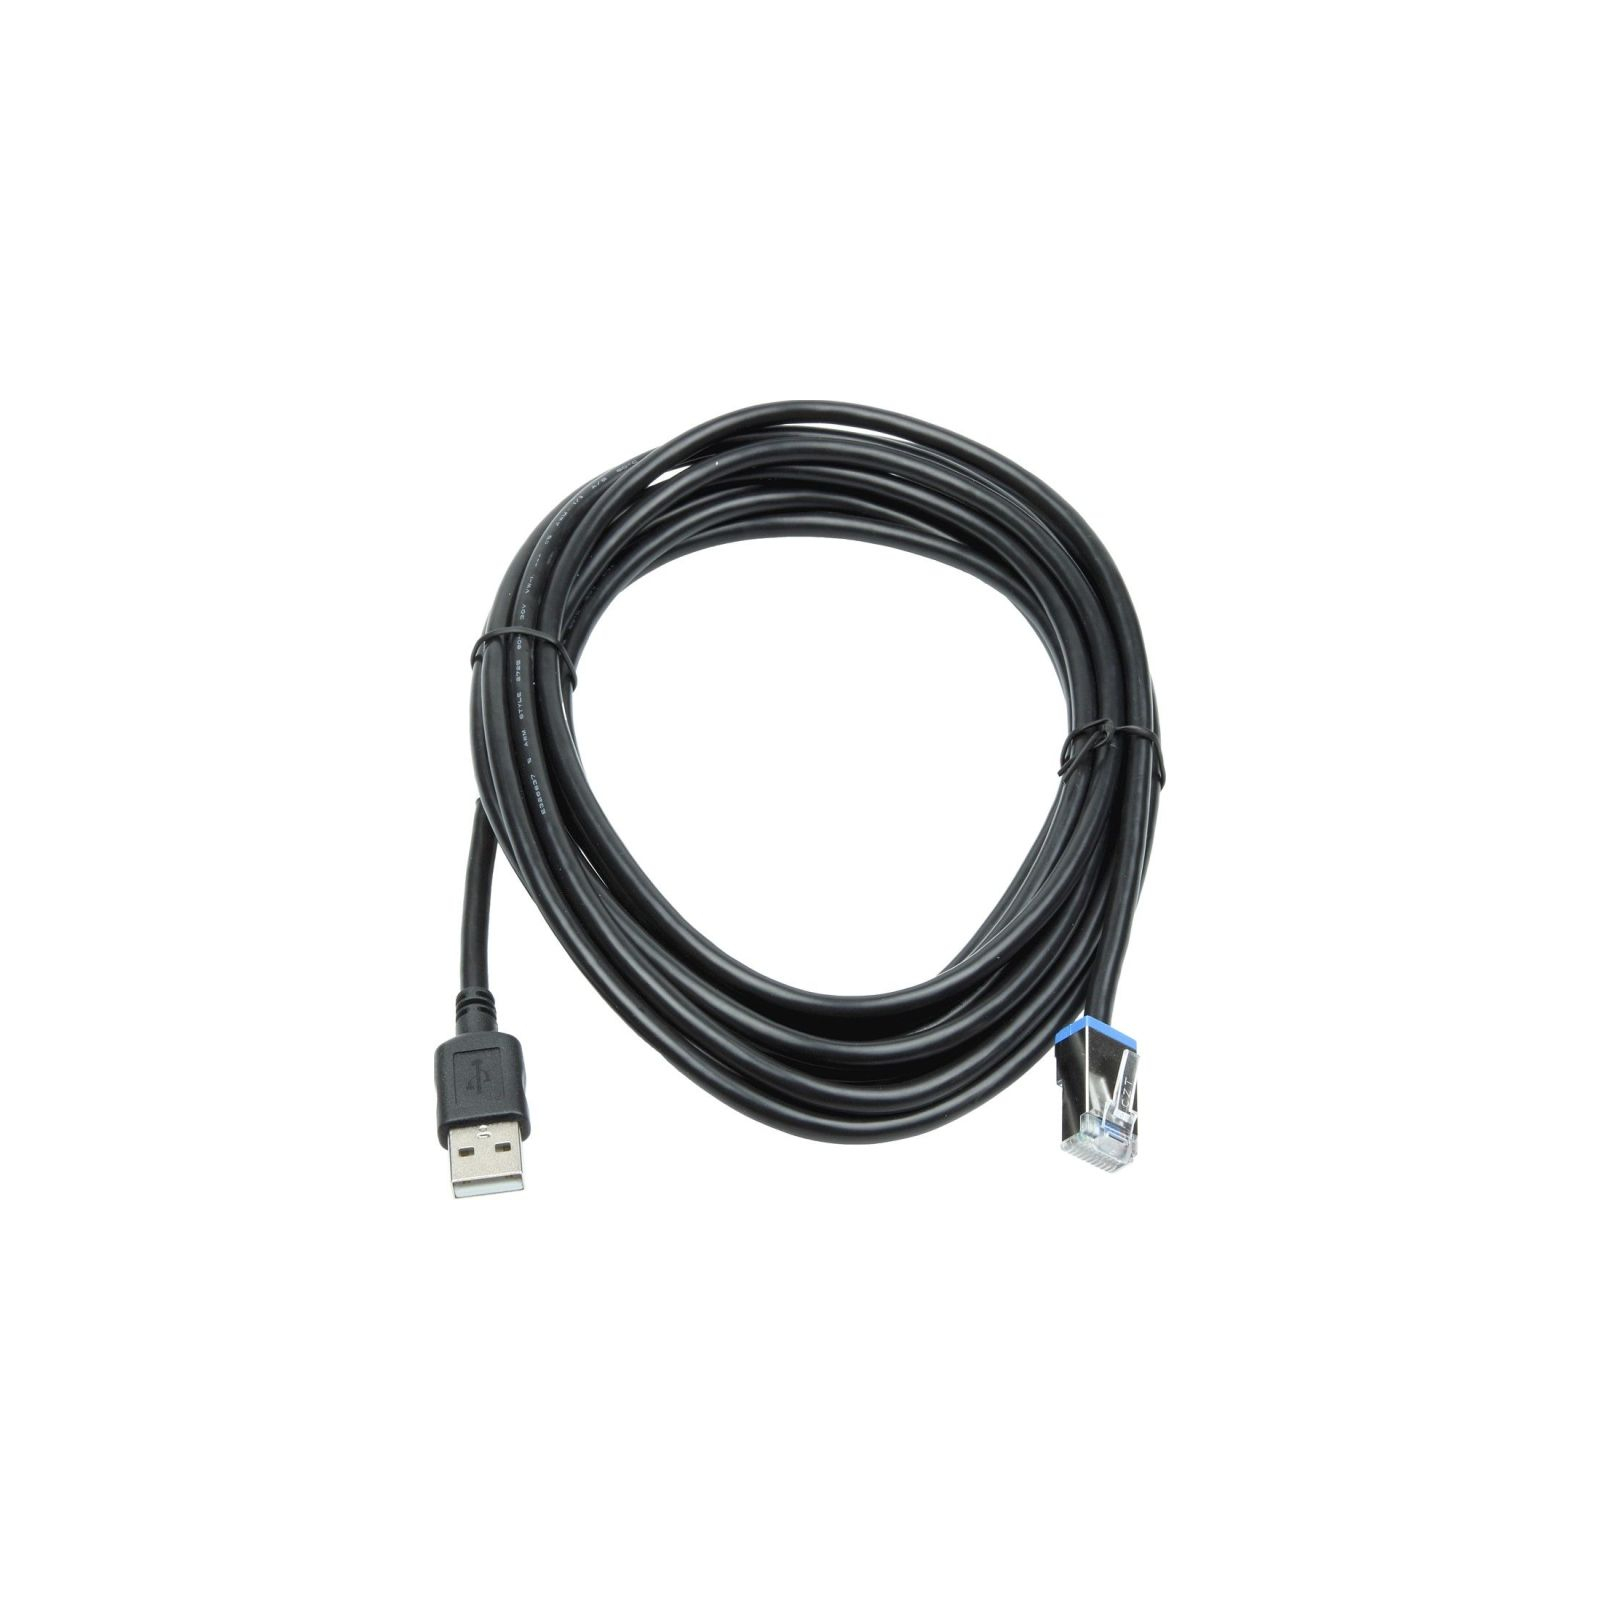 Интерфейсный кабель Datalogic USB к сканерам Magellan 3450VSi (90A052292)